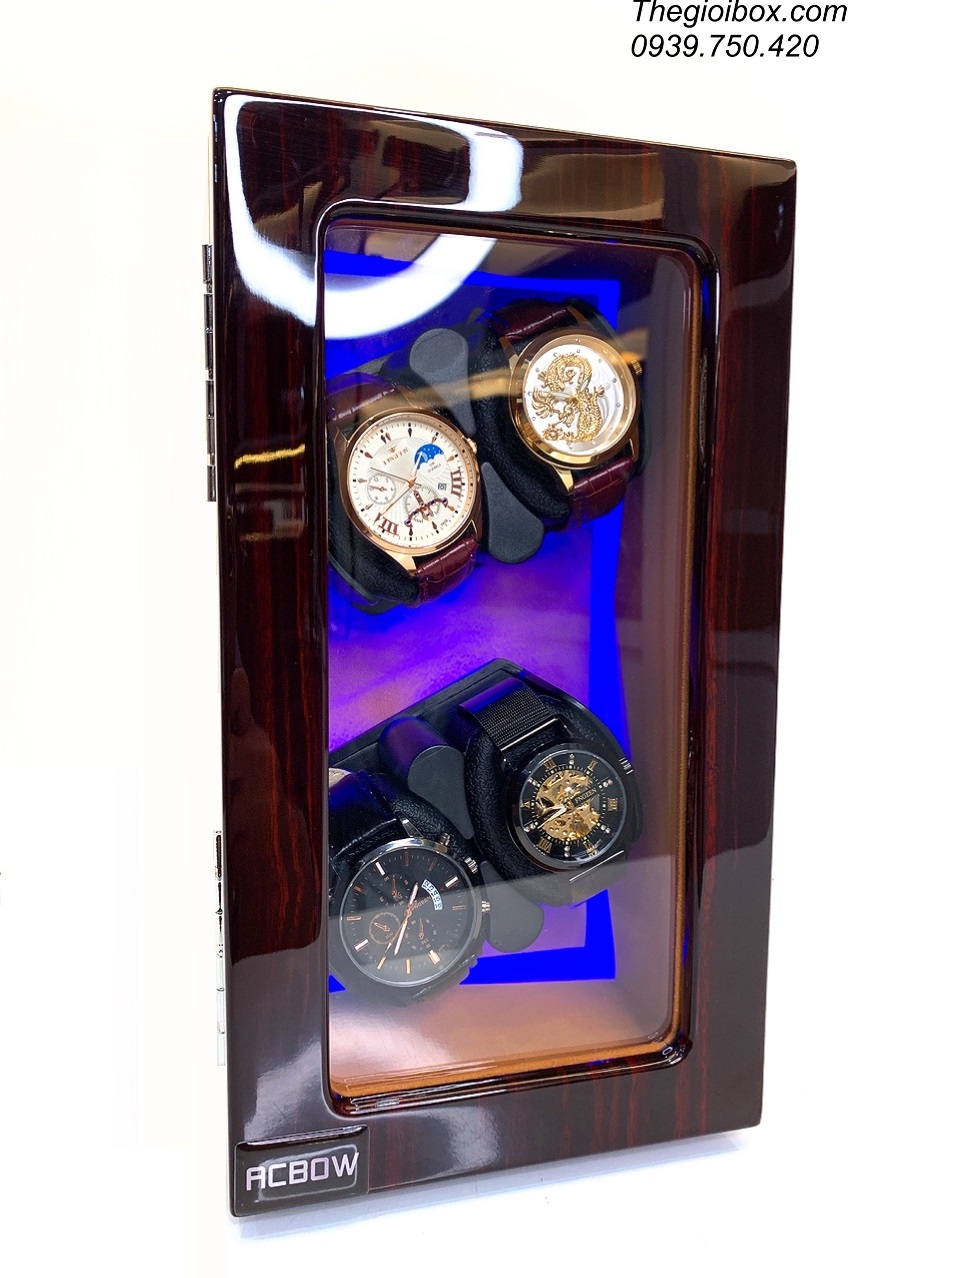 tủ hộp xoay lên dây cót đồng hồ tự động ACBOW nhỏ gọn cao cấp giá rẻ